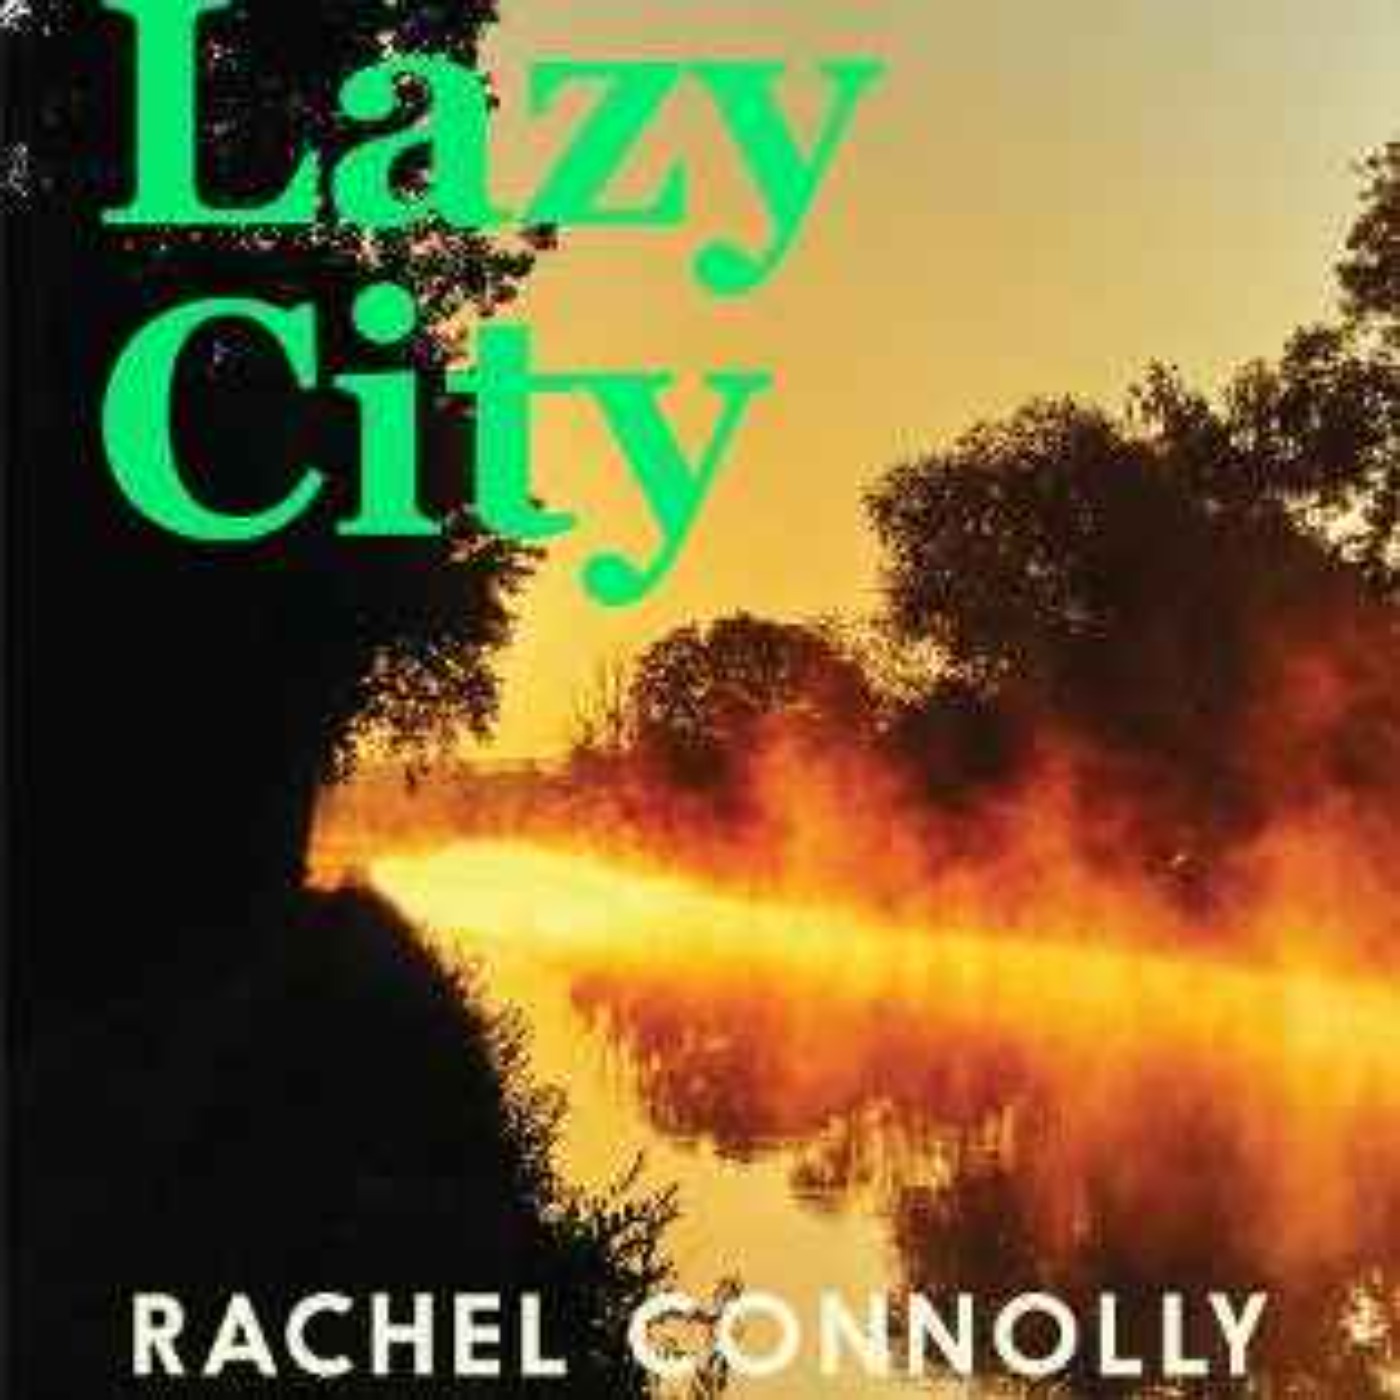 Little Atoms 849 - Rachel Connolly's Lazy City